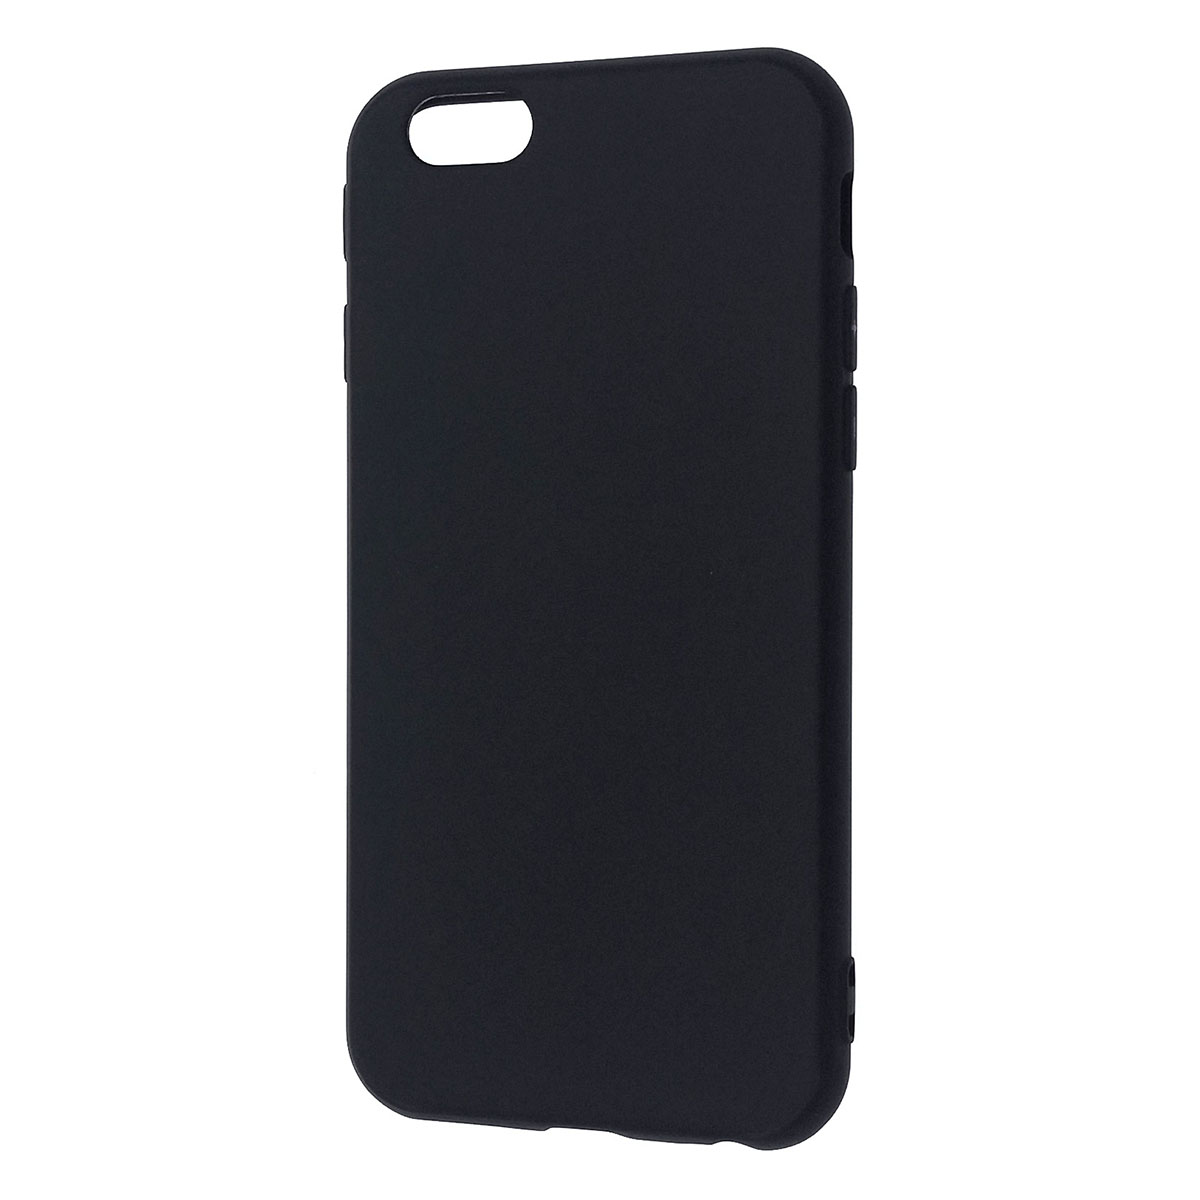 Чехол накладка GPS для APPLE iPhone 6, iPhone 6G, iPhone 6S, силикон, матовый, цвет черный.